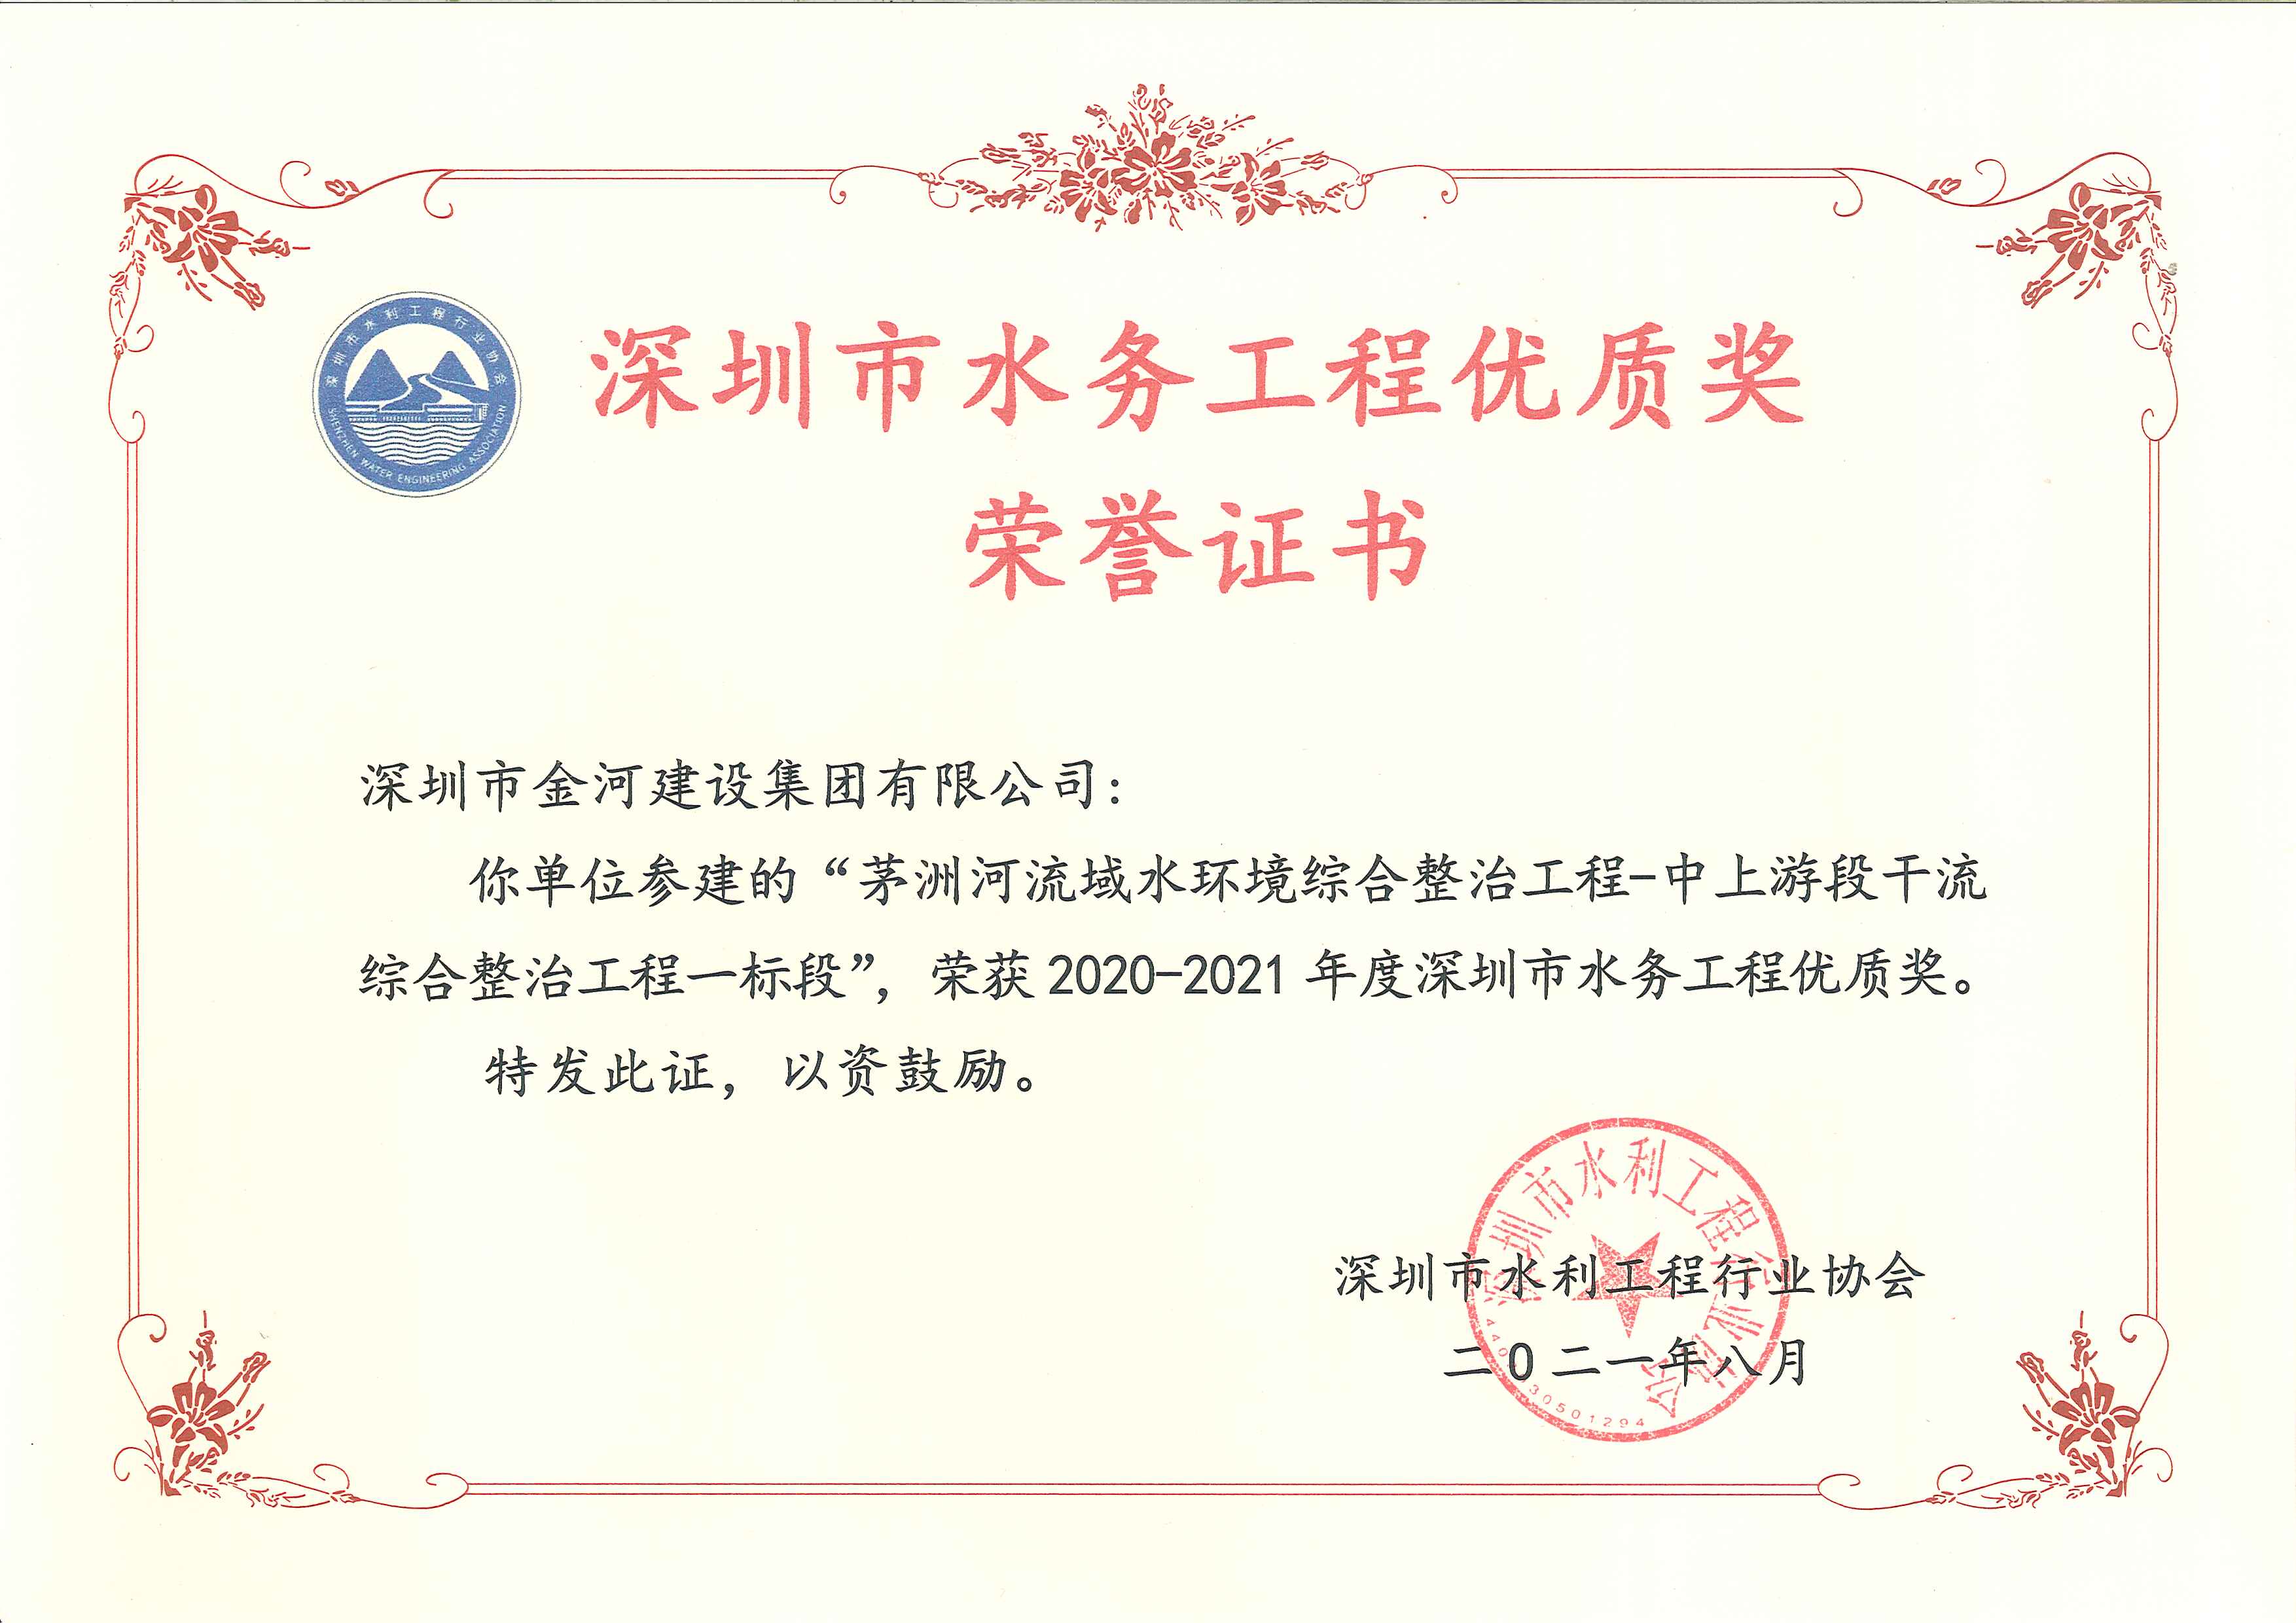 2020-2021年度深圳市水务工程优质奖（茅洲河流域水环境综合整治工程——中上游段干流综合整治工程一标段）